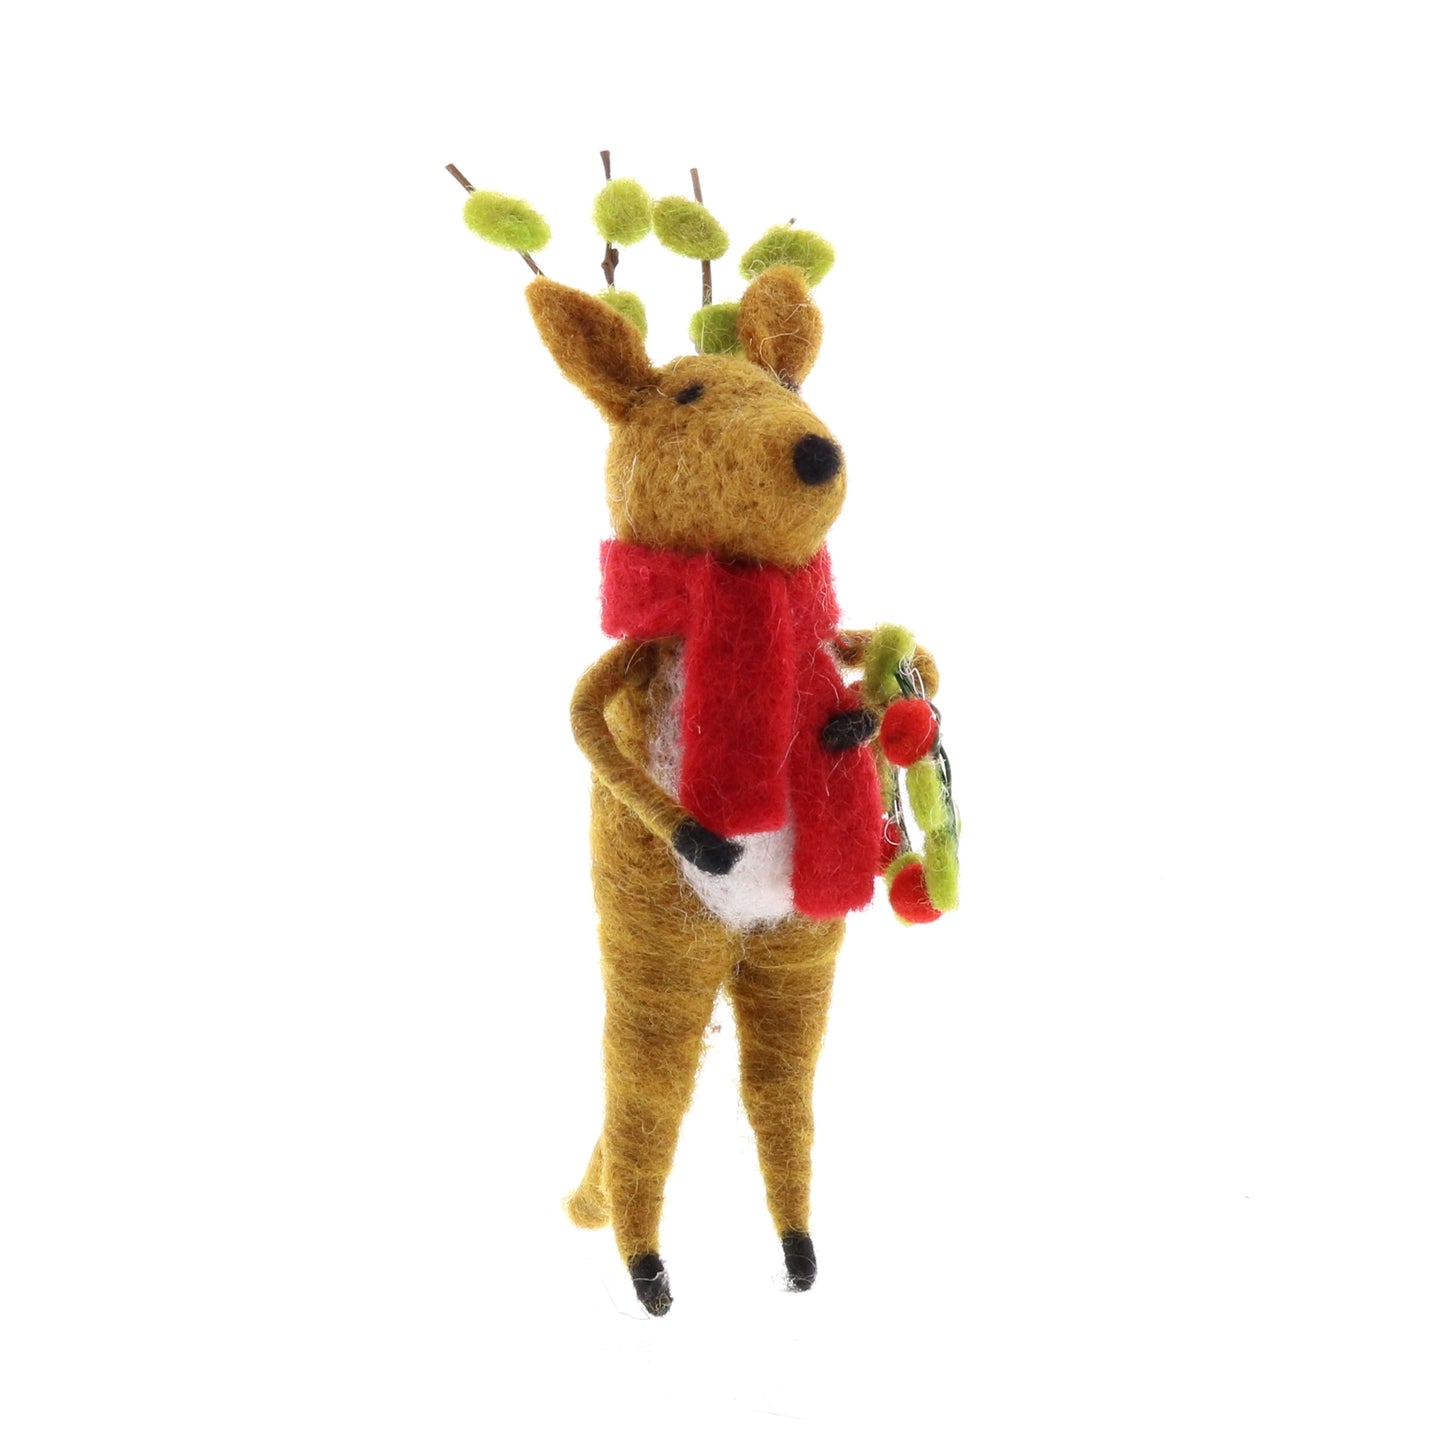 Christmas-ornament-cute-felt-reindeer-set-with-wreath